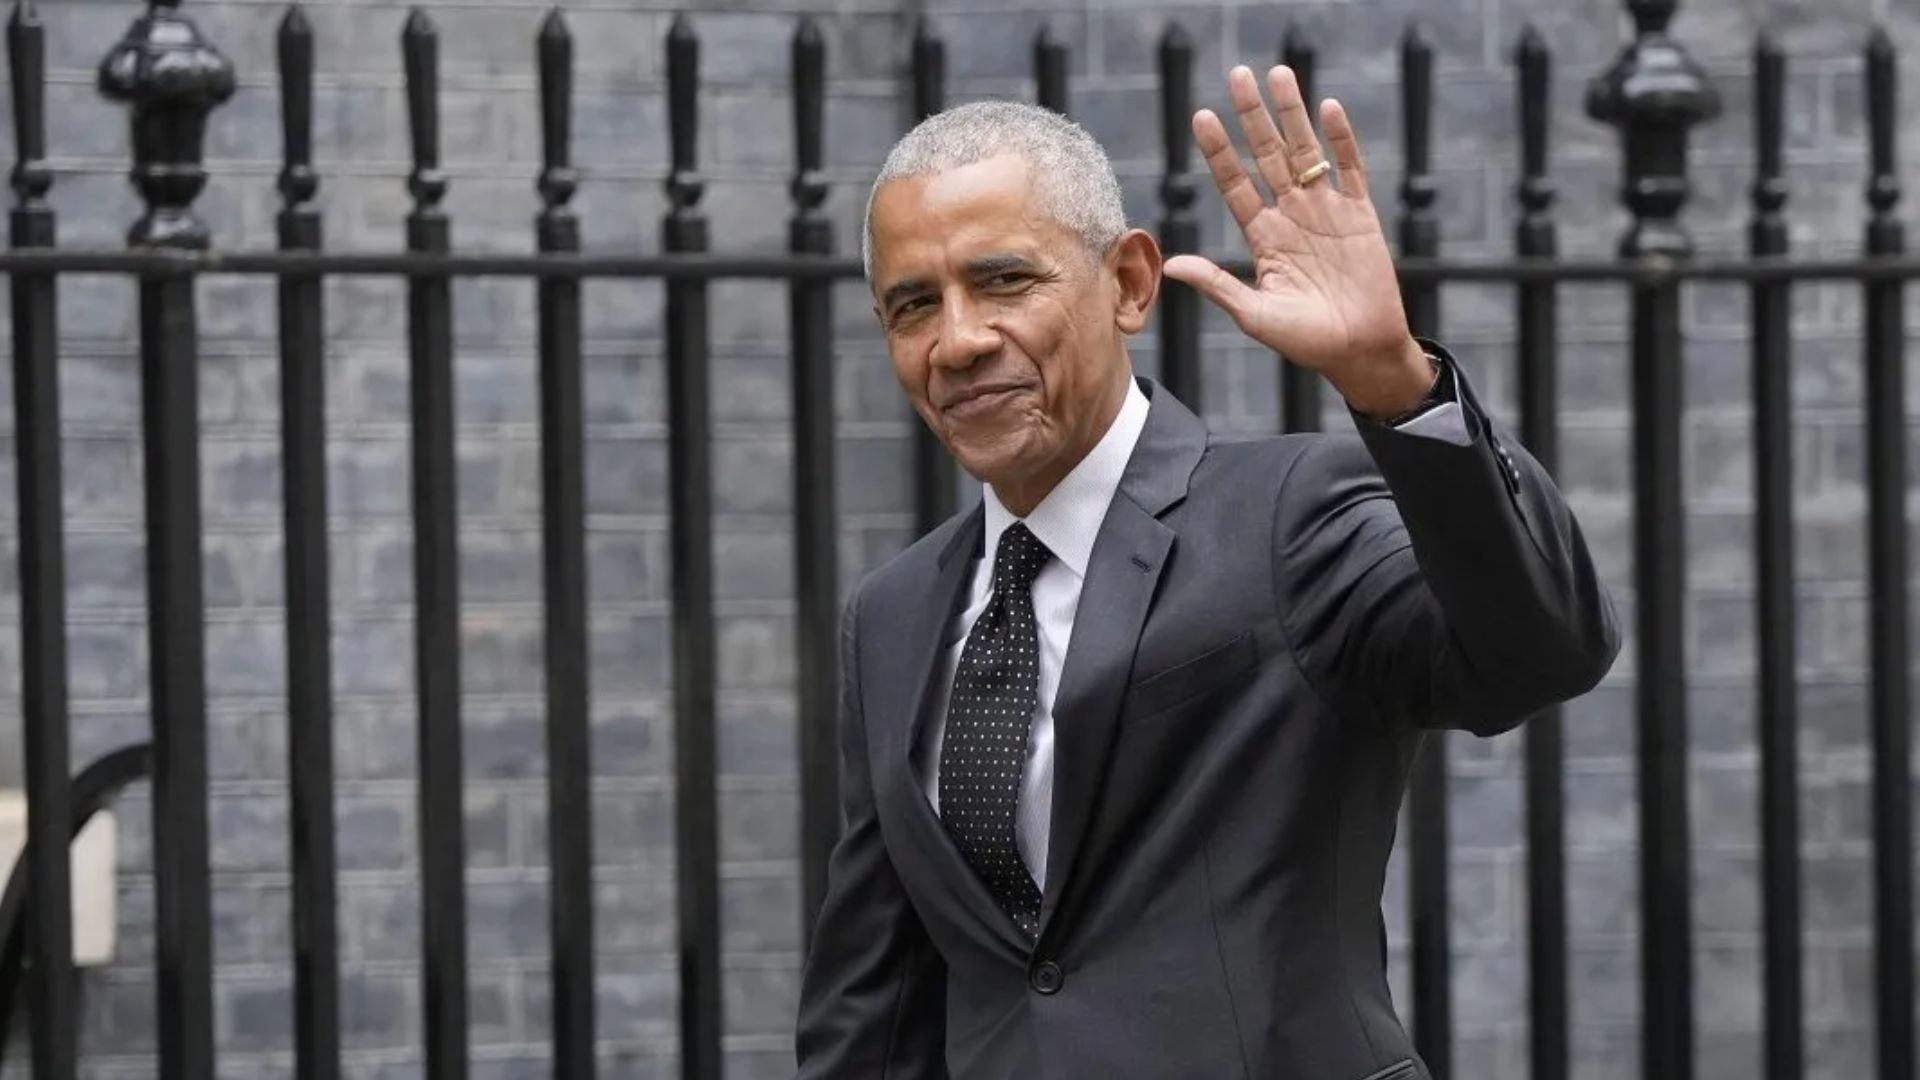 Obama makes surprise UK visit to meet with Sunak